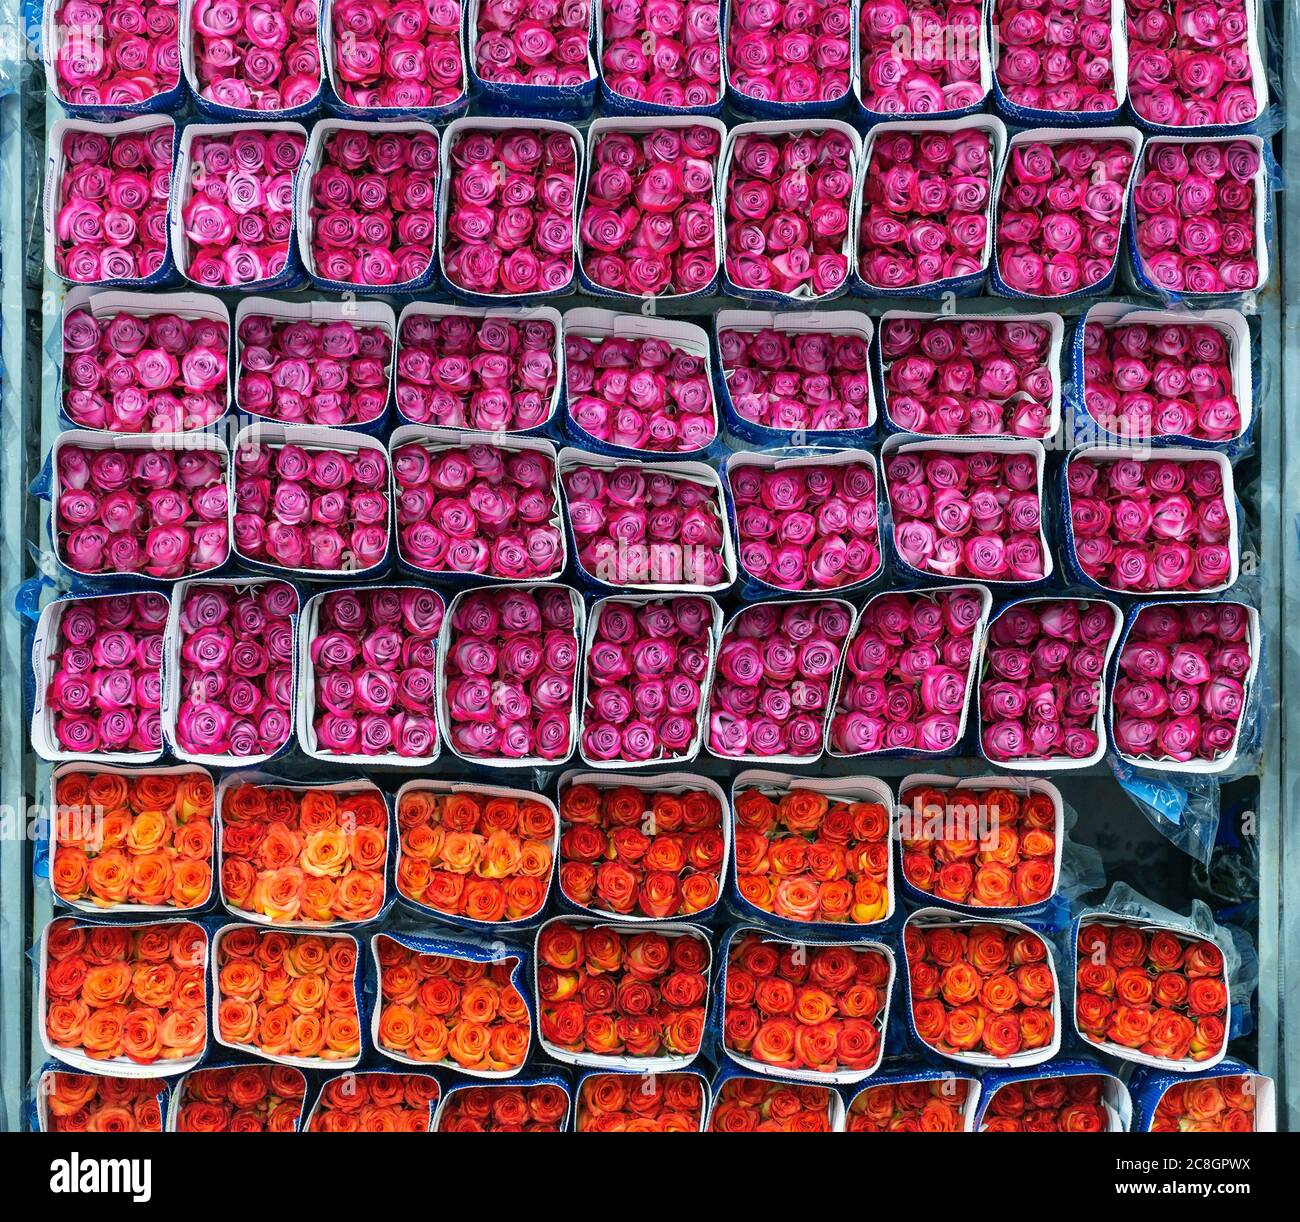 Fucsia e rose arancioni imballate e pronte per l'esportazione nei pressi di Tabacundo e Cayambe, a nord di Quito, Ecuador. La Rosa è il fiore nazionale. Foto Stock